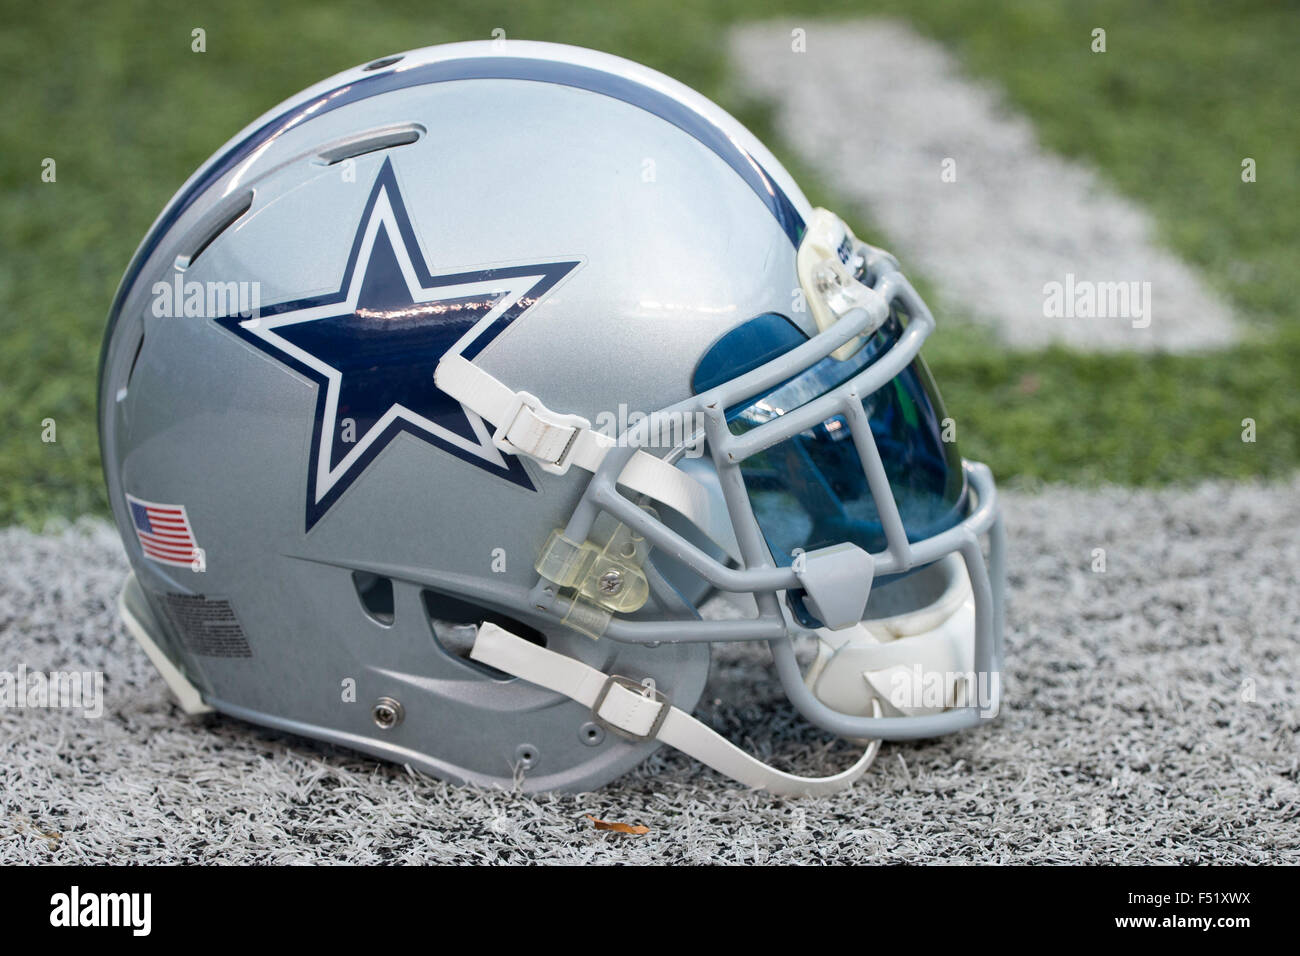 NFL: Washington vs Dallas EN VIVO. Partido de los Vaqueros de Dallas hoy -  NFL 2023